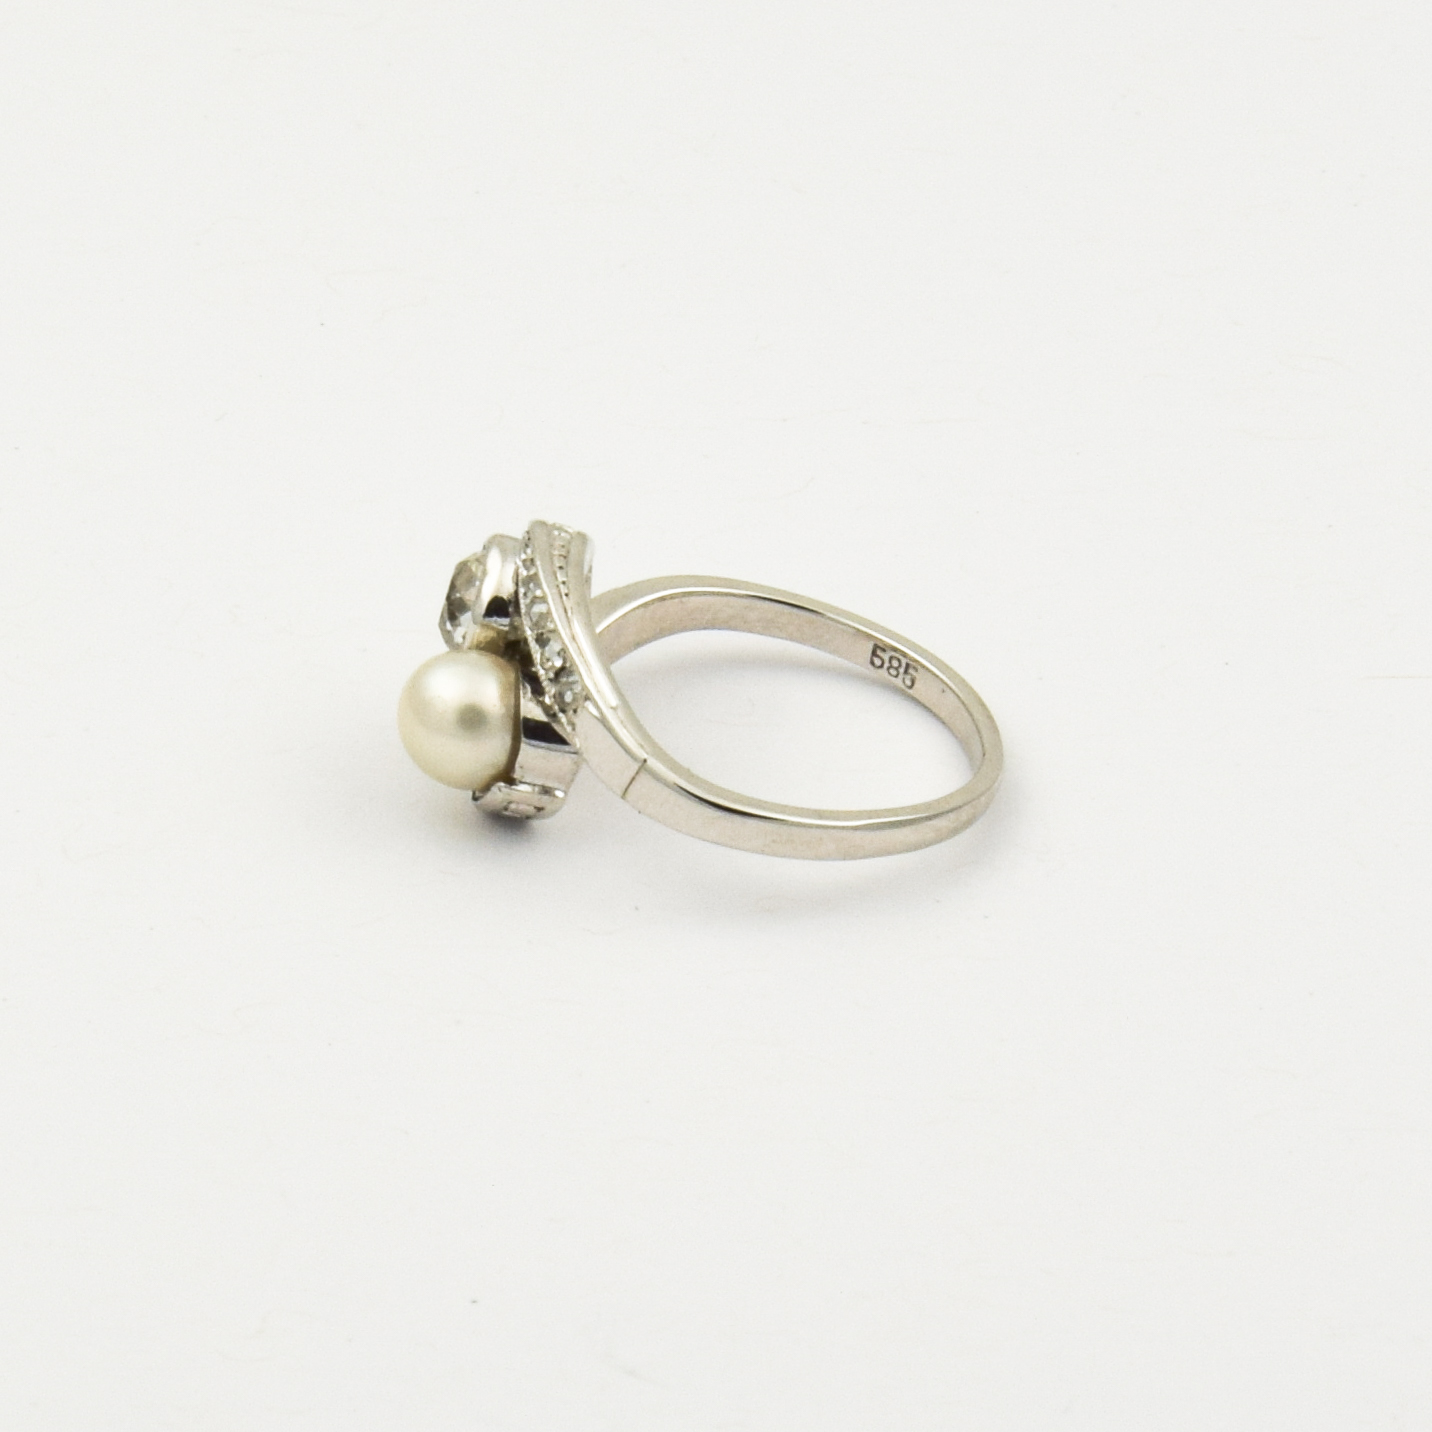 Toi-et-Moi Ring aus 585 Weißgold mit Perle und Diamant, nachhaltiger second hand Schmuck perfekt aufgearbeitet